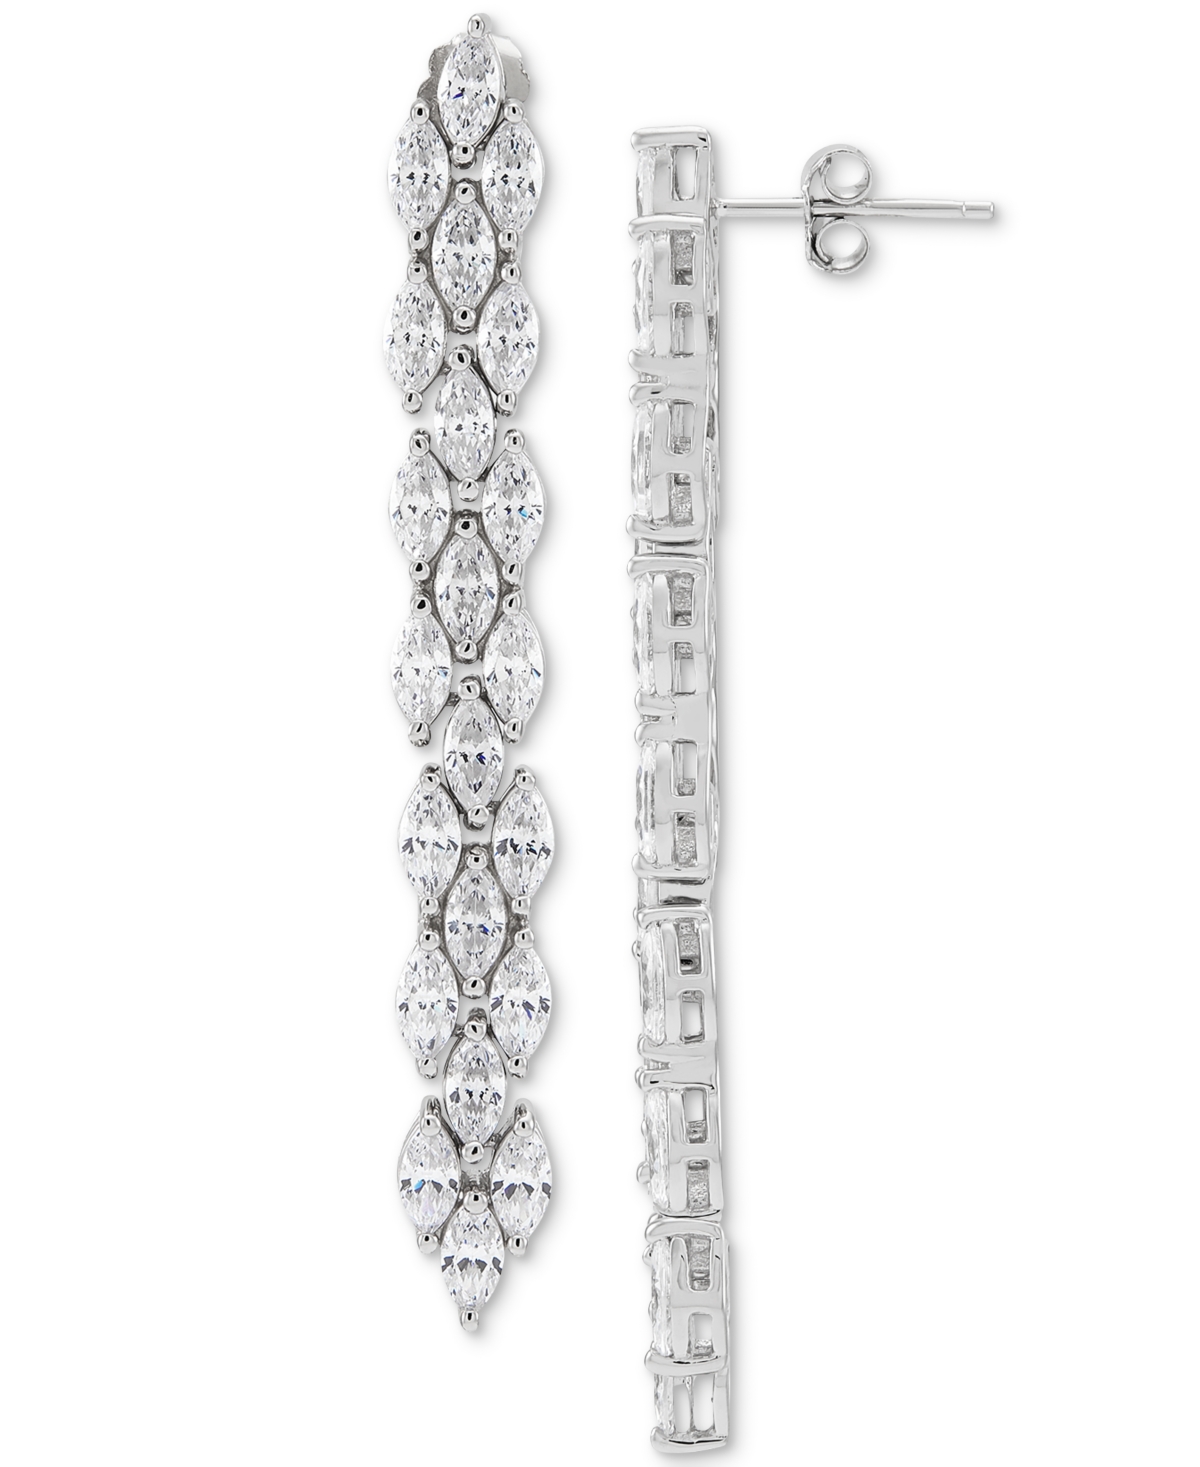 Cubic Zirconia Linear Drop Earrings in Sterling Silver - Silver